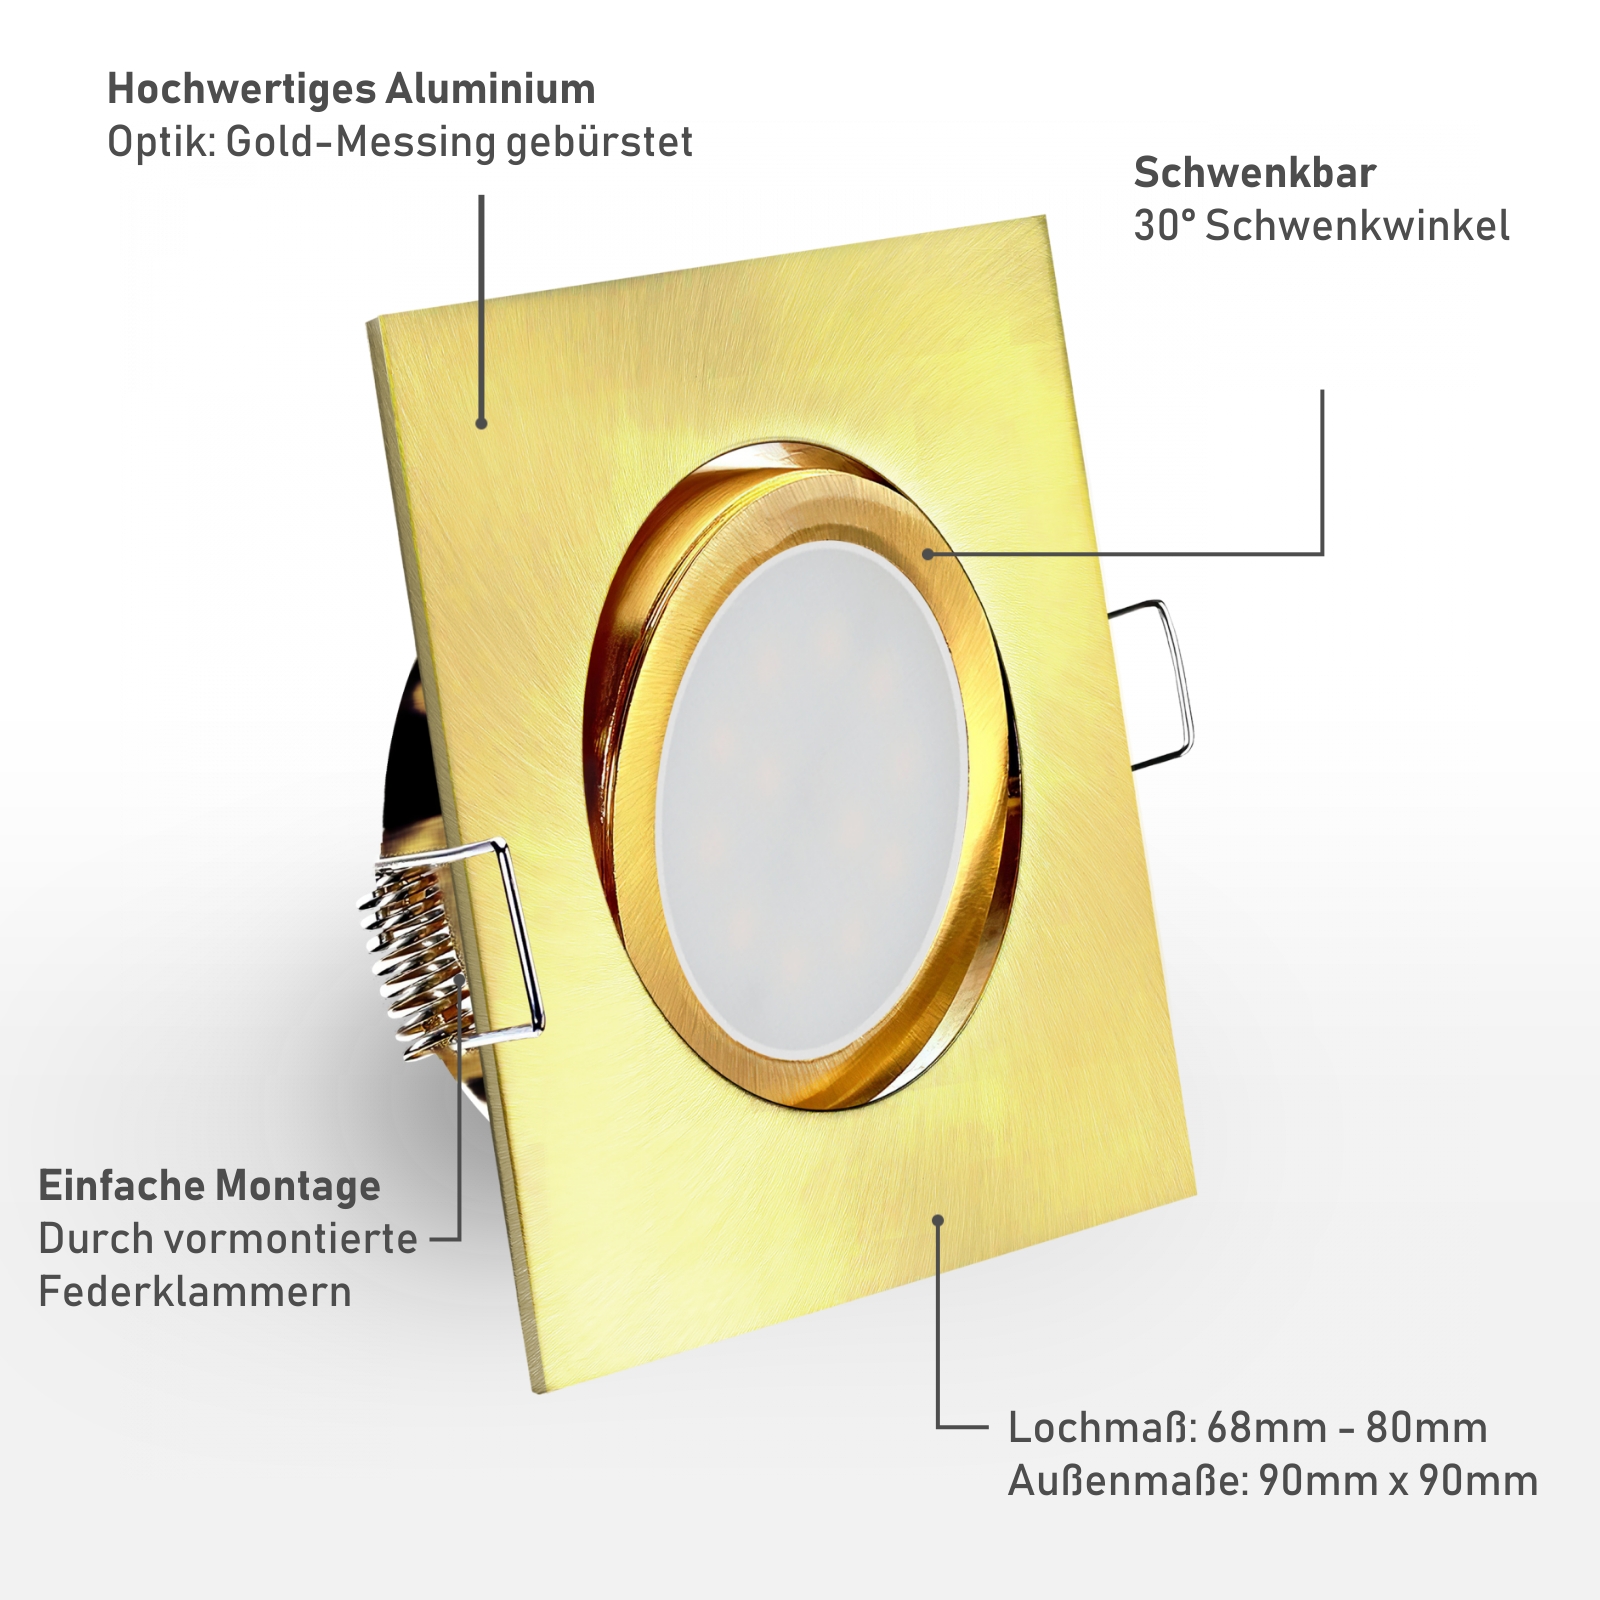 Einbaustrahler Material: Hochwertiges Aluminium Optik: Gold-Messing gebürstet Einfache Montage durch vormontierte Federklammern 30° schwenkbar